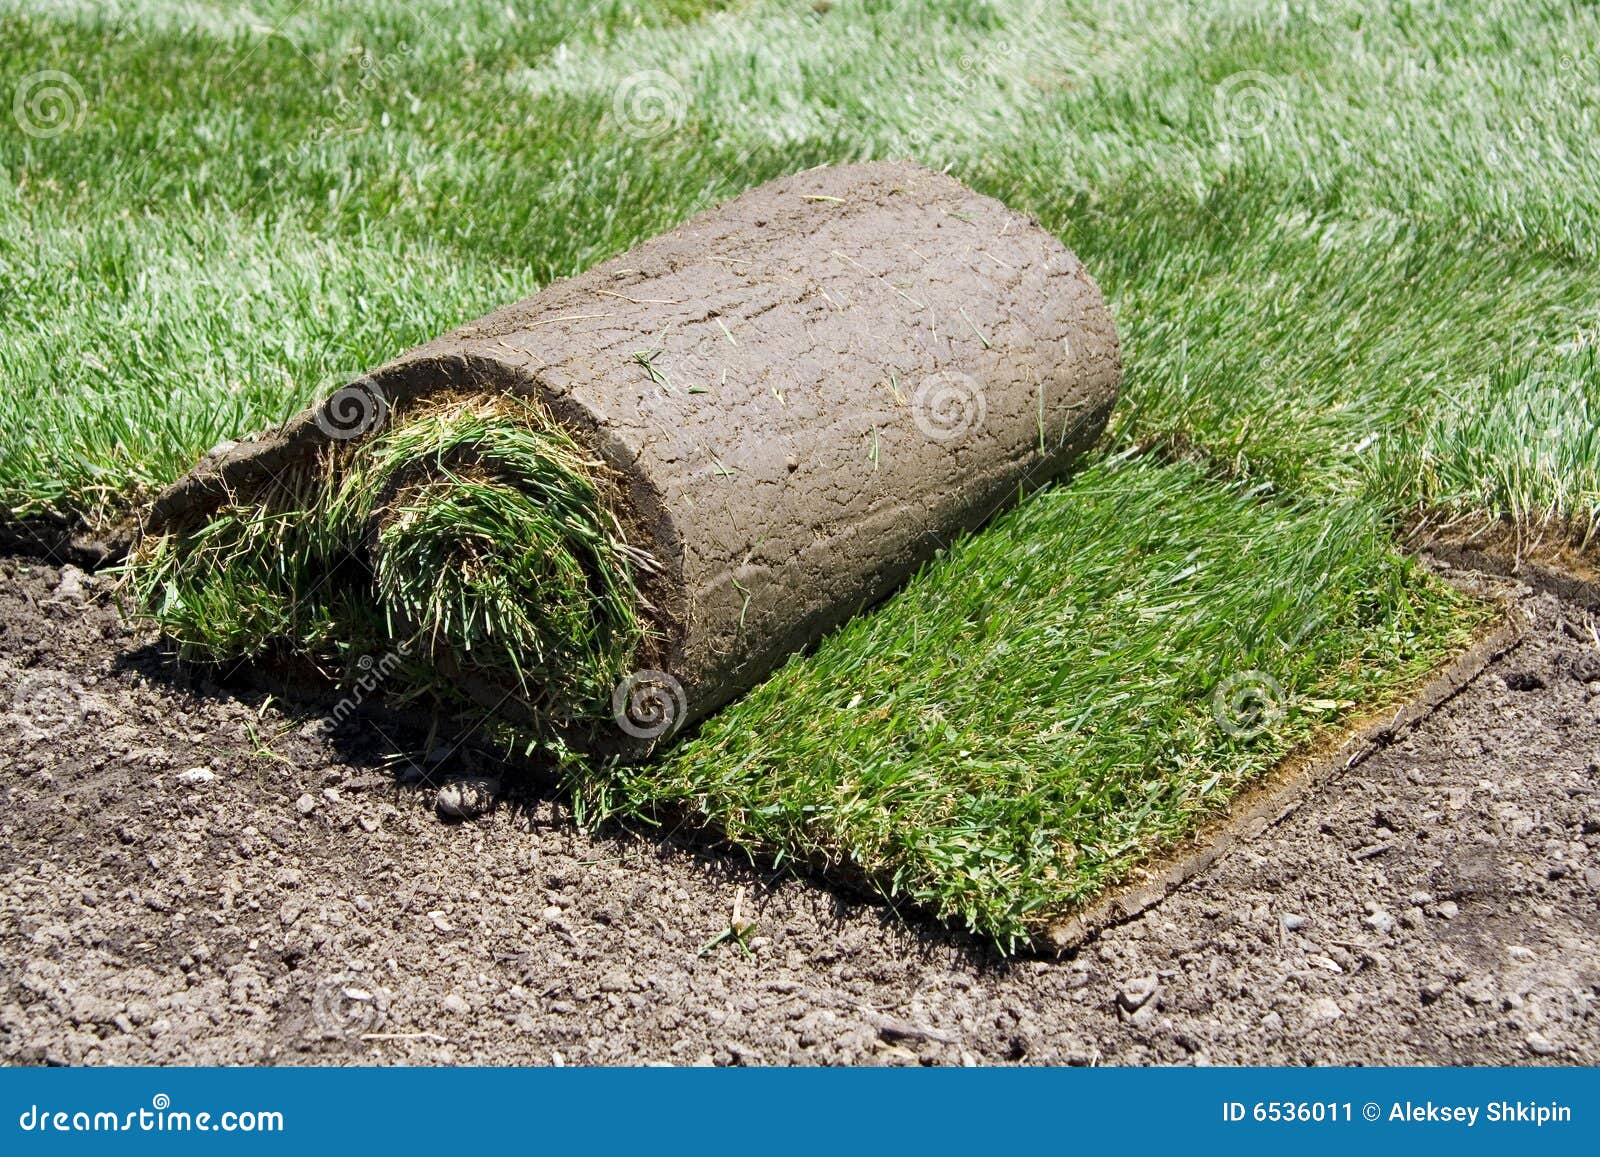 roll sod green grass 6536011